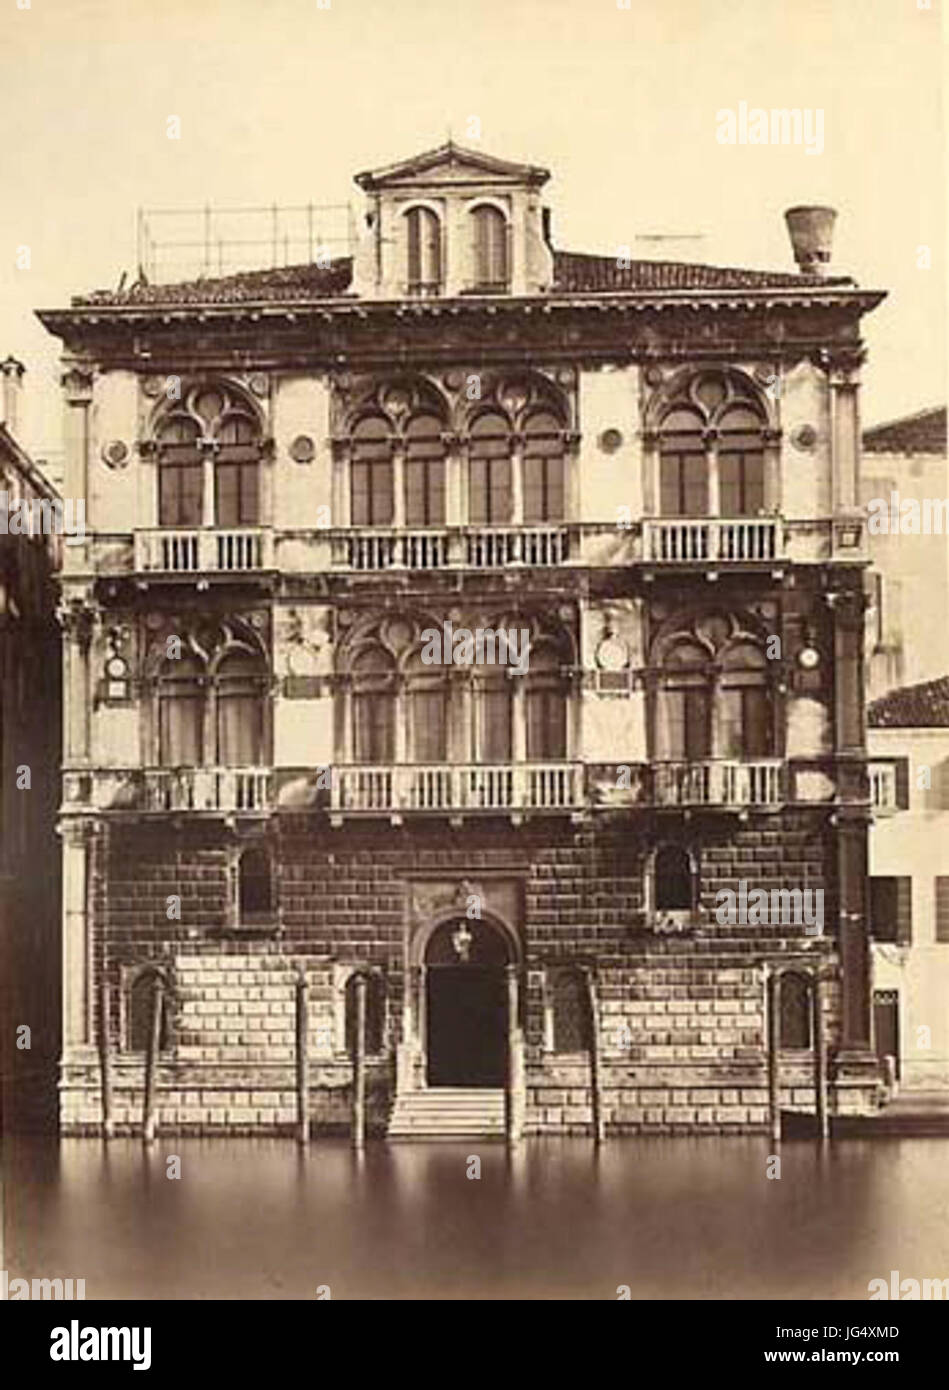 Carlo Ponti 28ca. 1823-189329 - Venezia - Palazzo Carrer Spinelli Foto de stock